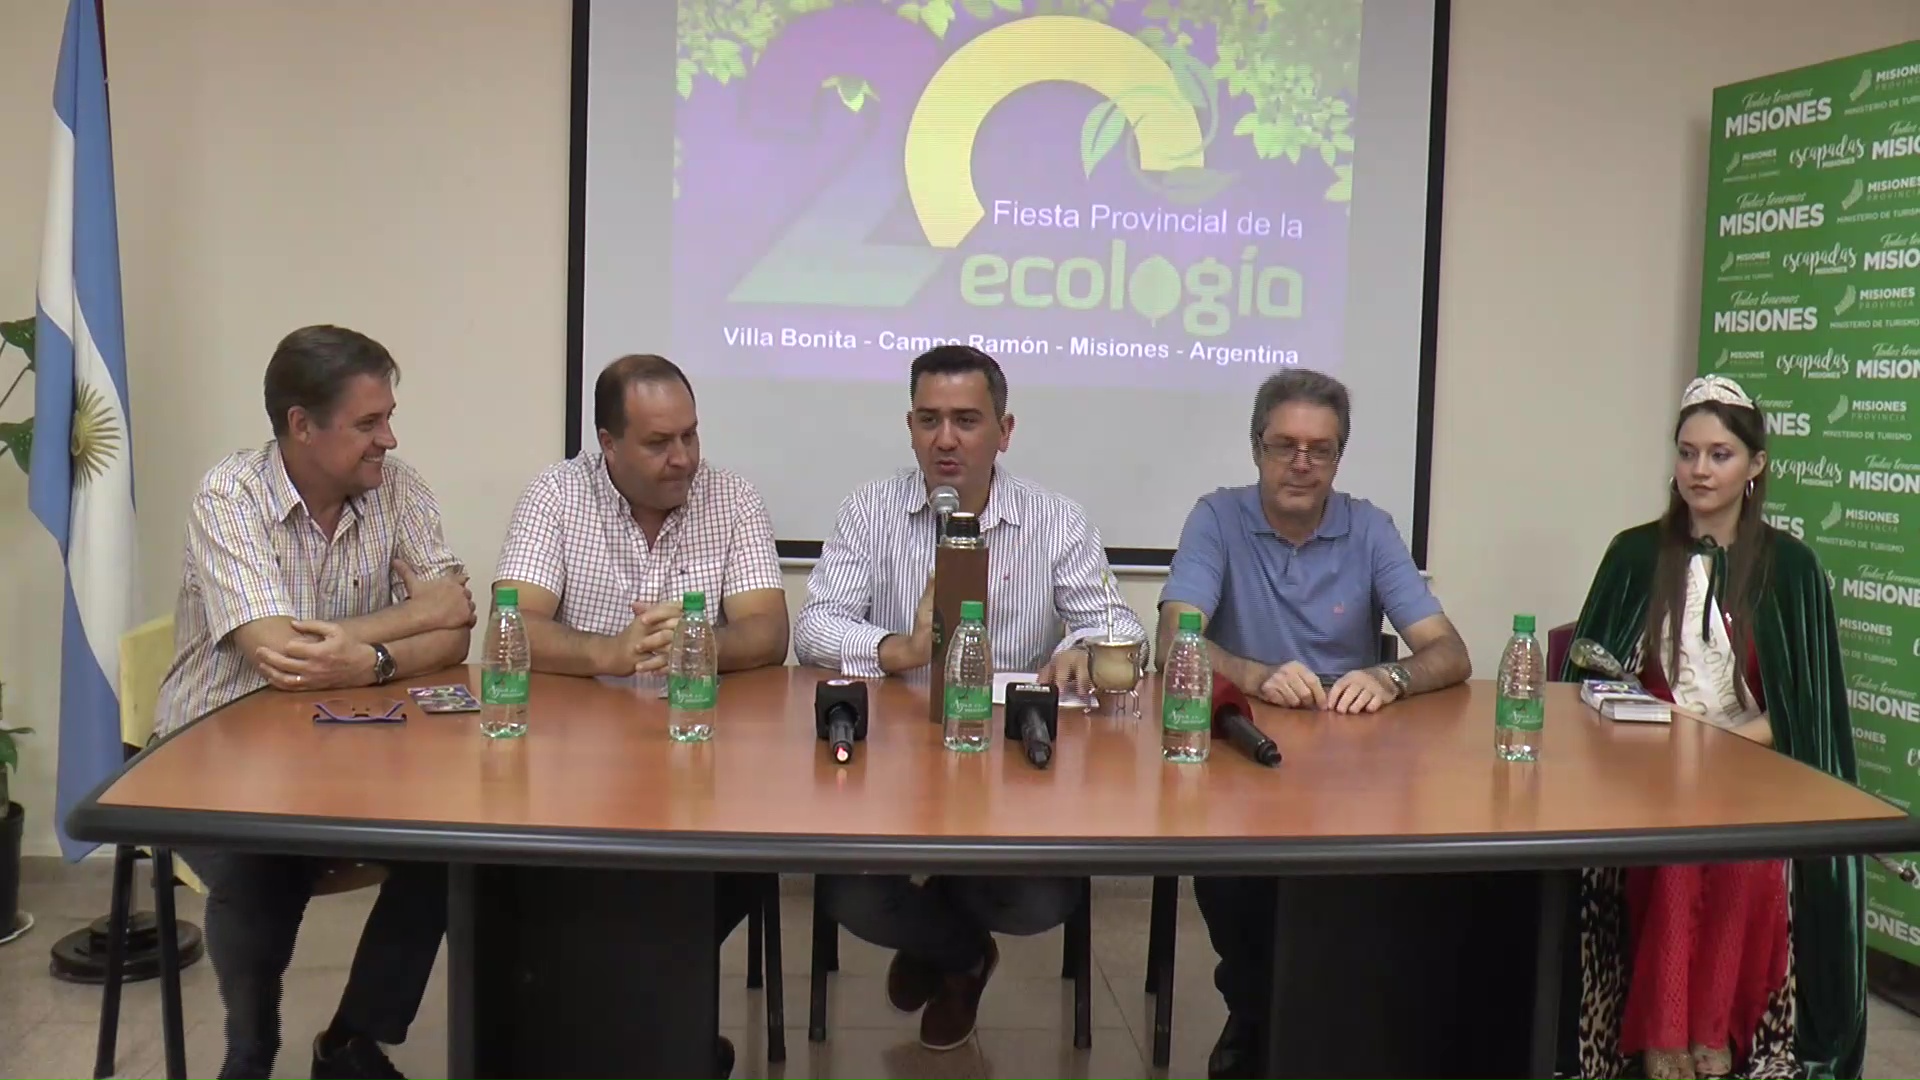 20° edición de la Fiesta Provincial de la Ecología: Campo Ramón comparte  su compromiso con el ambiente